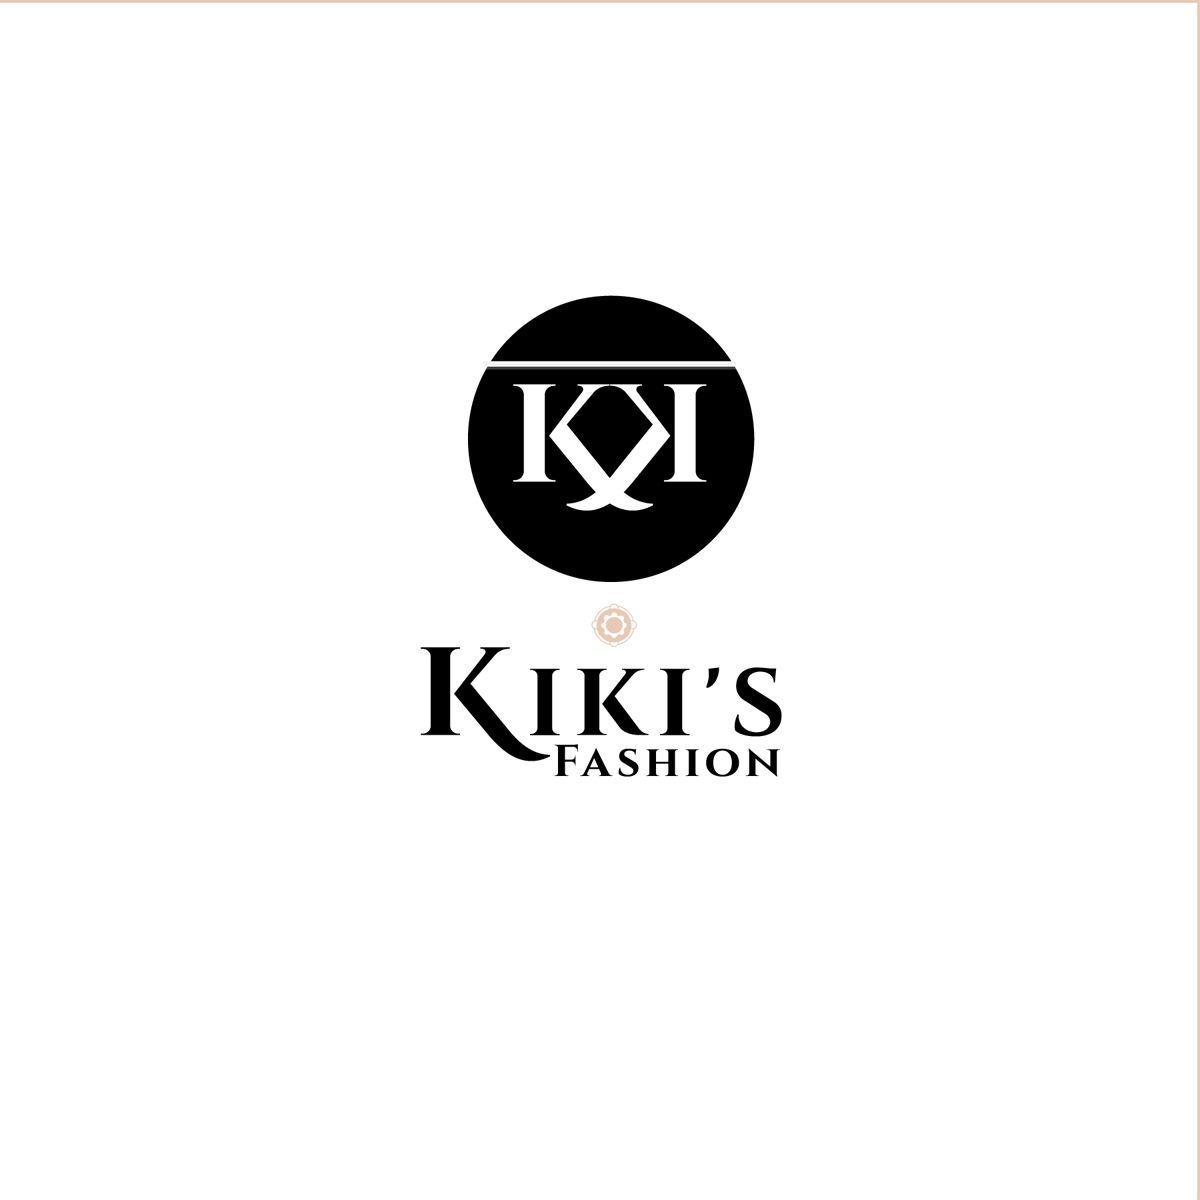 Kiki Logo - Fashion Logo Design for Kiki's Fashion by Venus L. Penaflor | Design ...